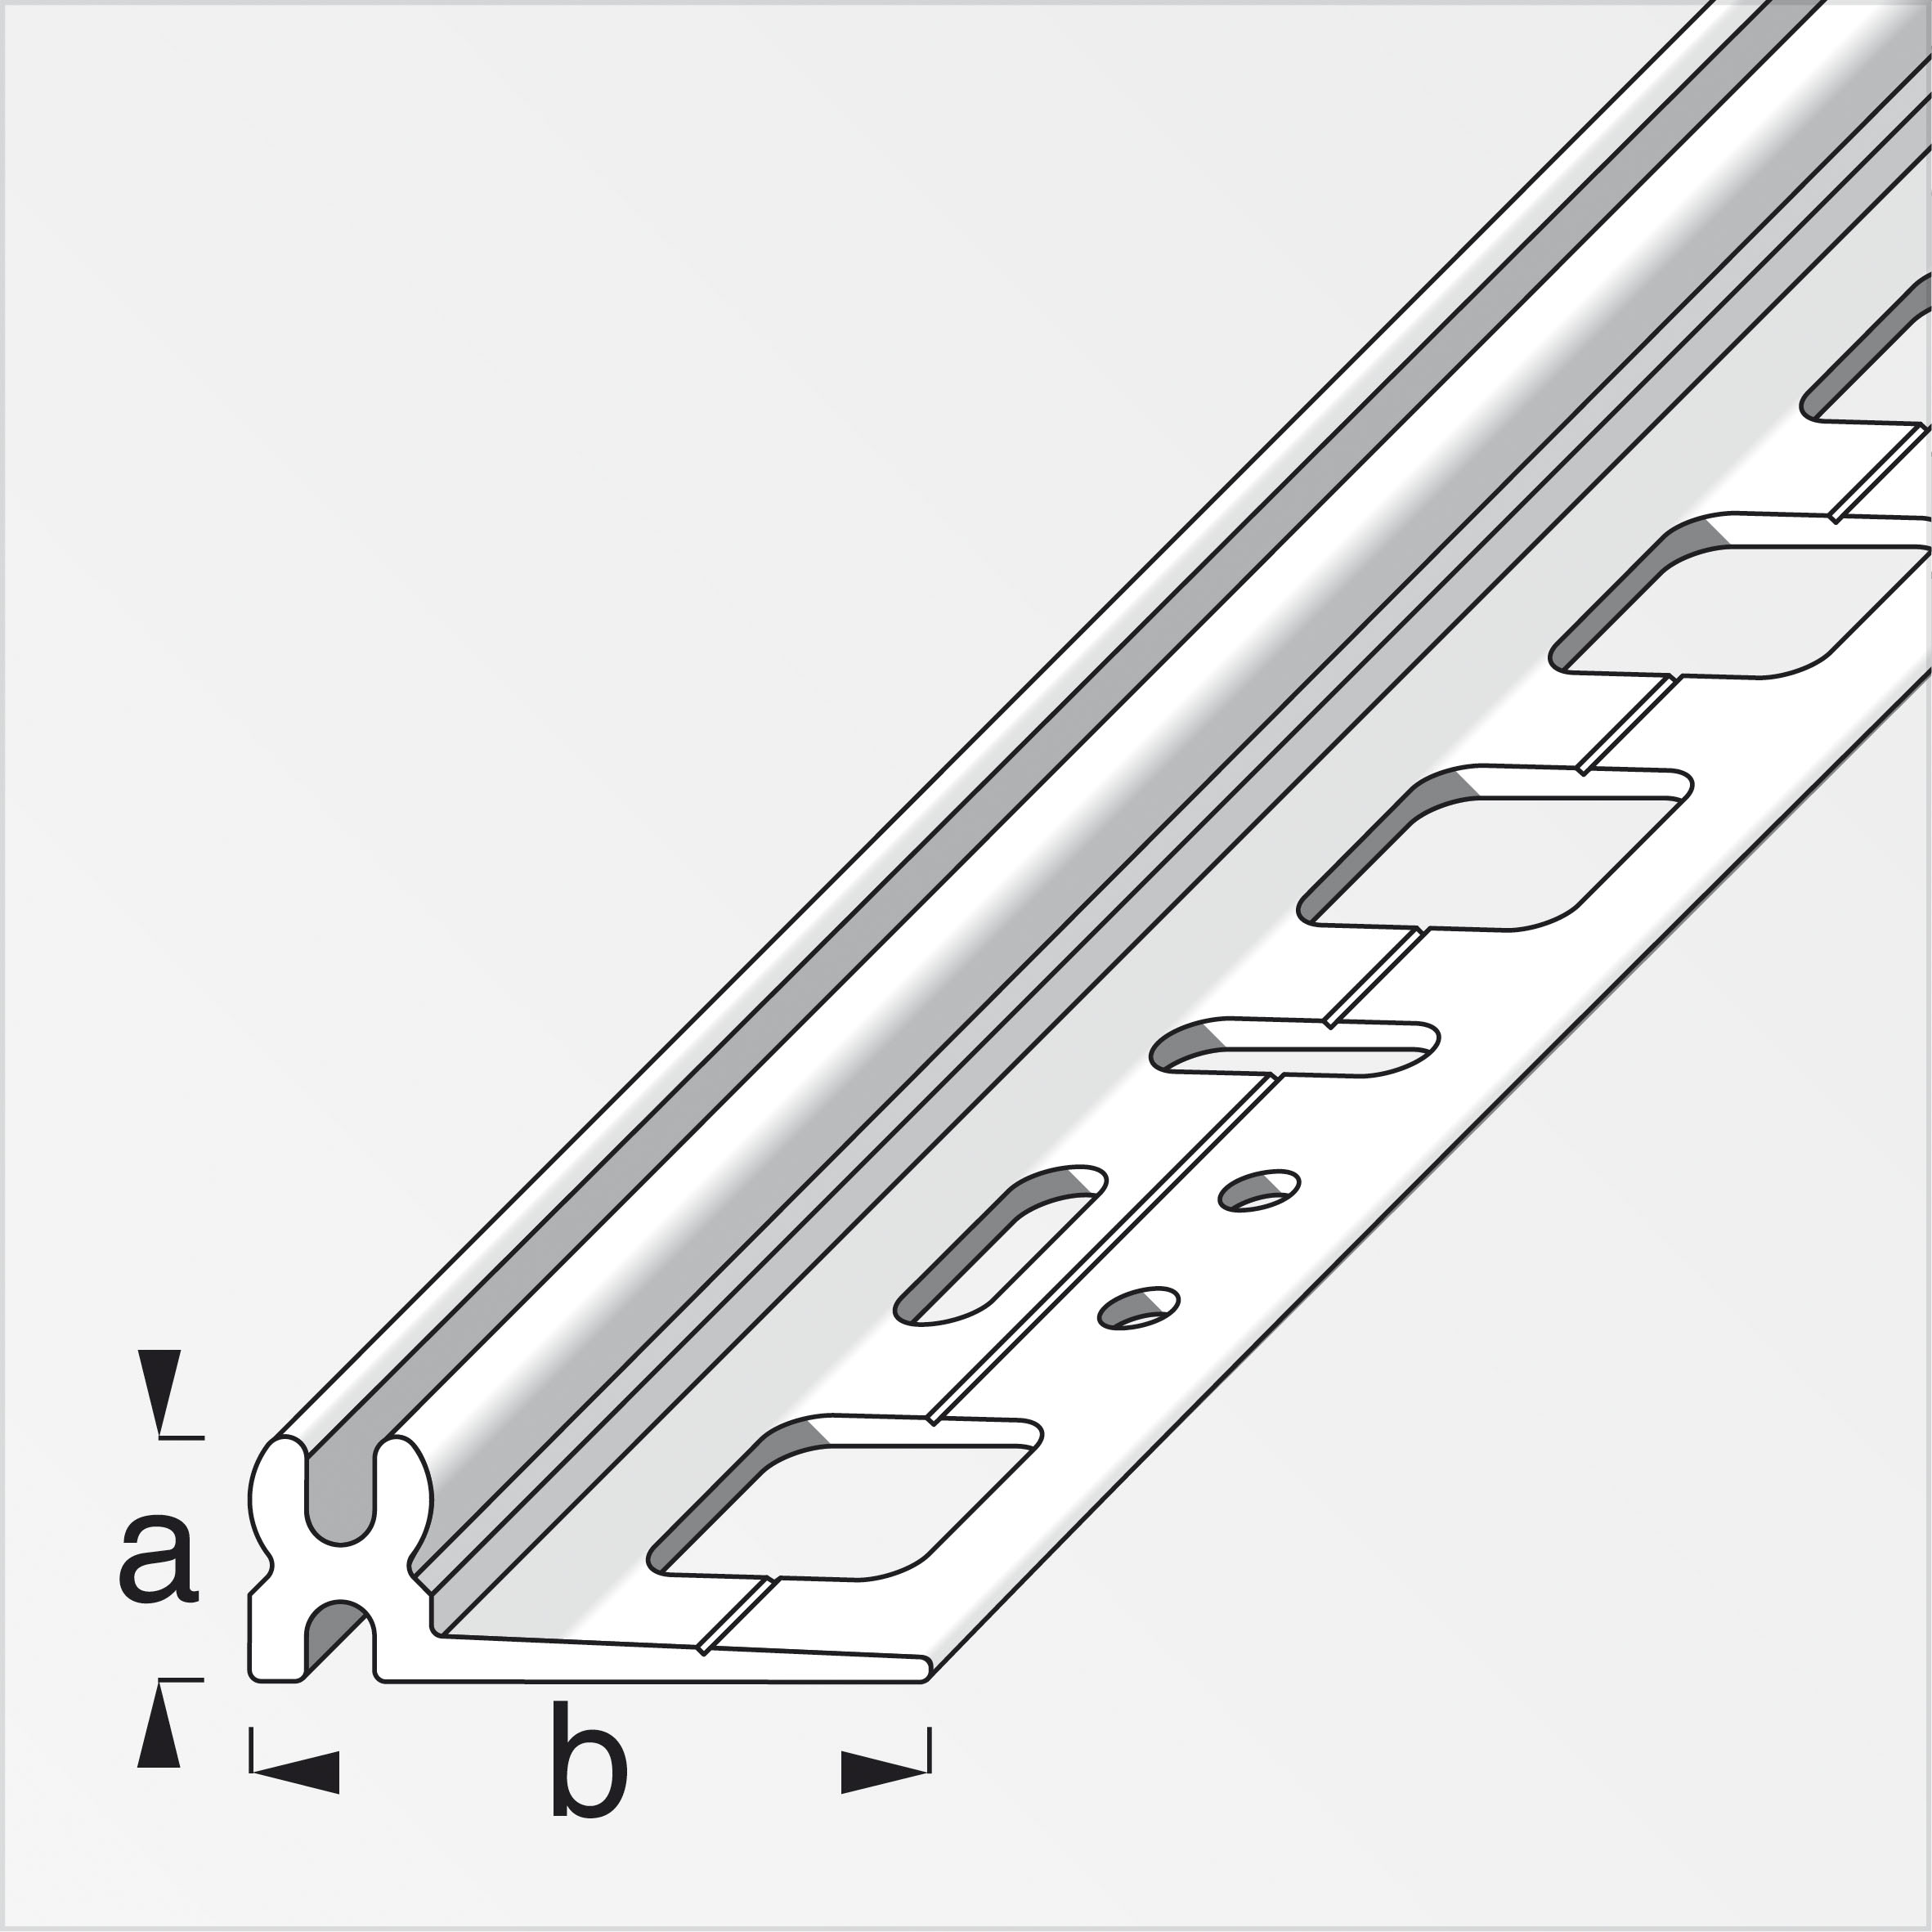 clipstech® Trägerprofil Kunststoff, Weiß 2,7 m, 8,5 × 30 mm